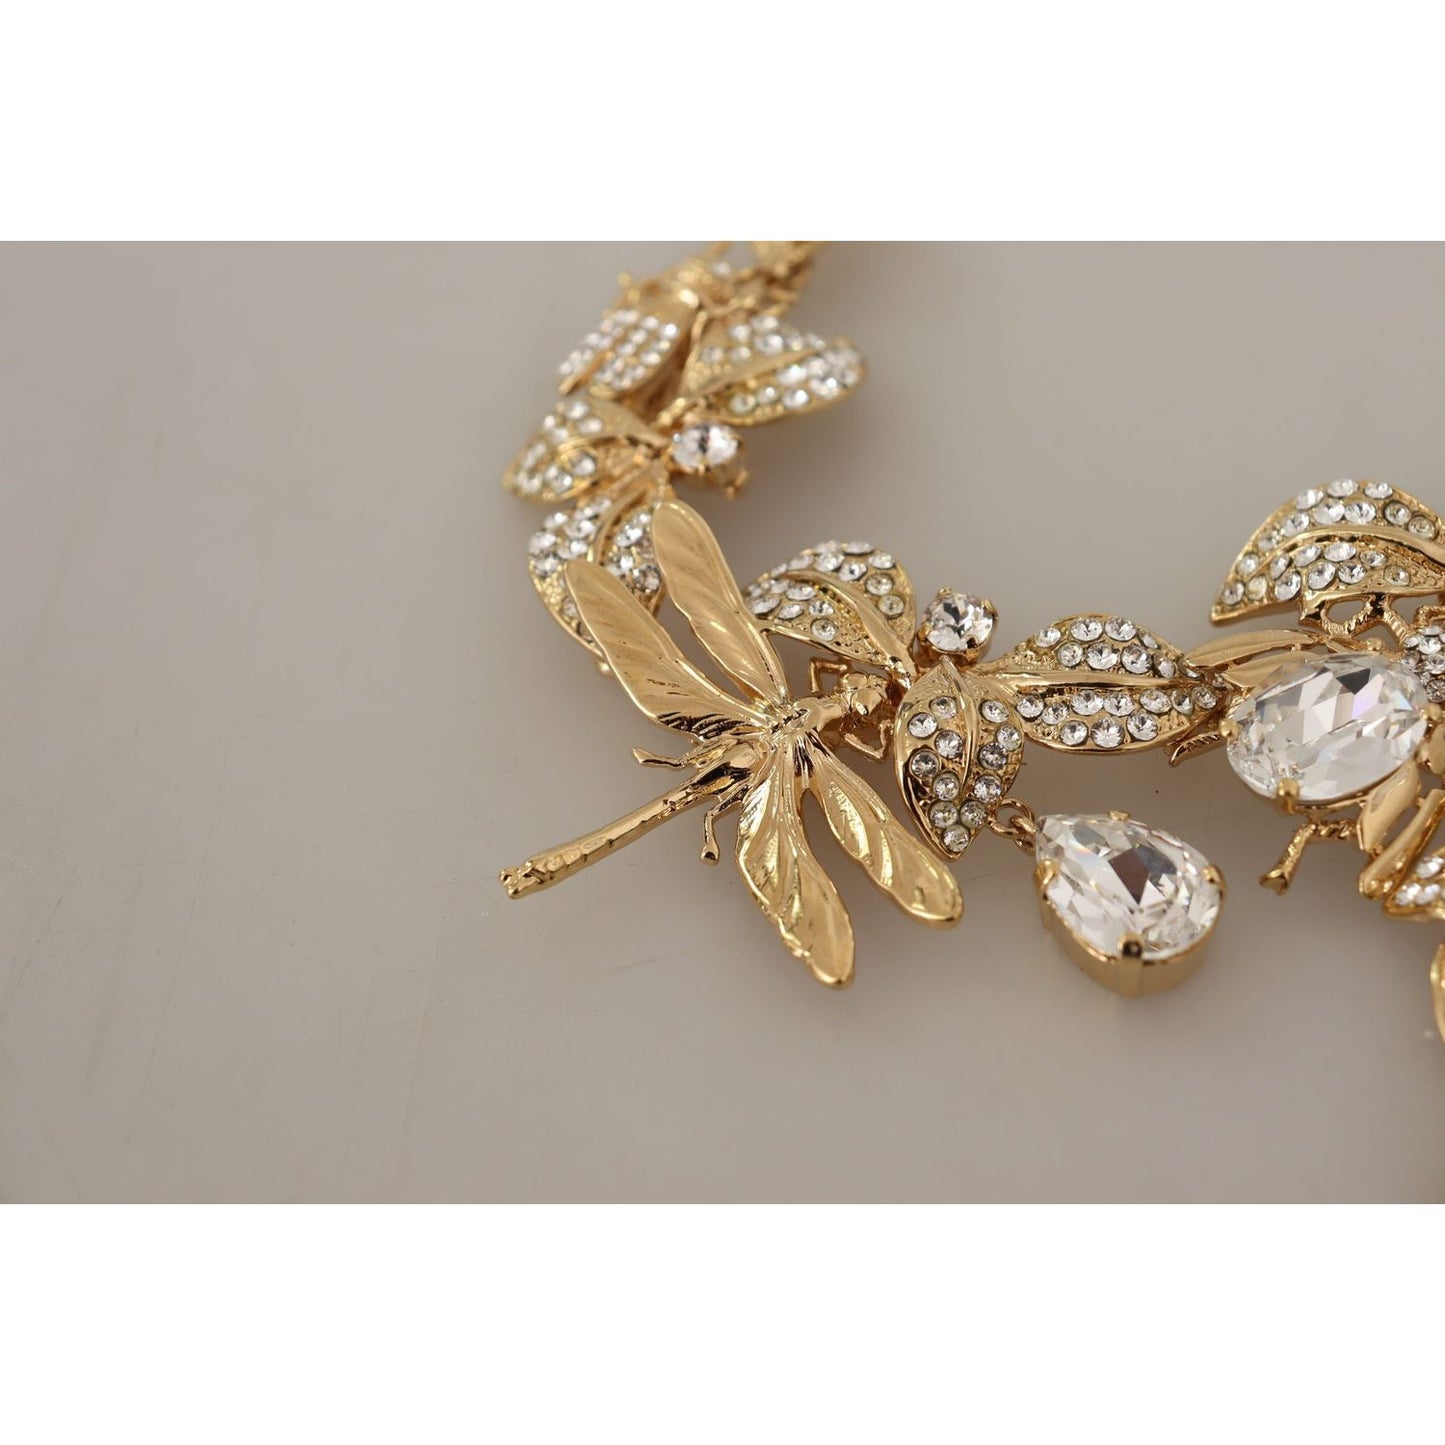 Dolce & Gabbana Elegant Sicily Floral Bug Statement Necklace gold-brass-floral-sicily-crystal-statement-necklace WOMAN NECKLACE IMG_1870-scaled-269358c6-96f.jpg